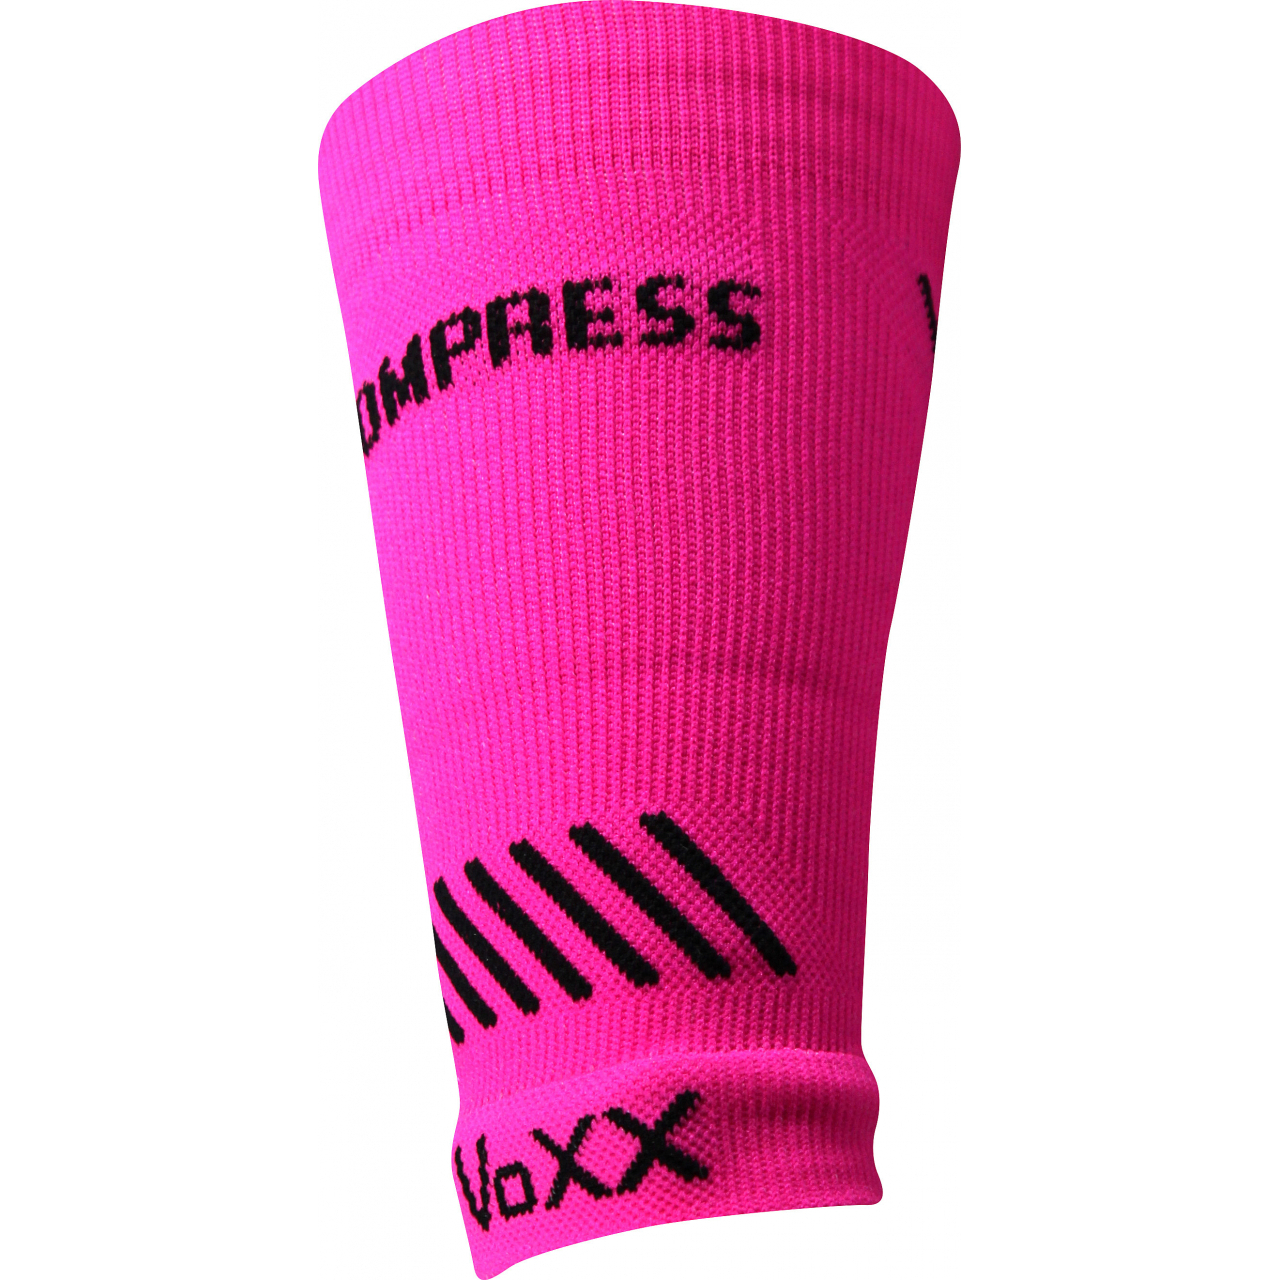 Návlek kompresní Voxx Protect zápěstí - růžový svítící, L/XL